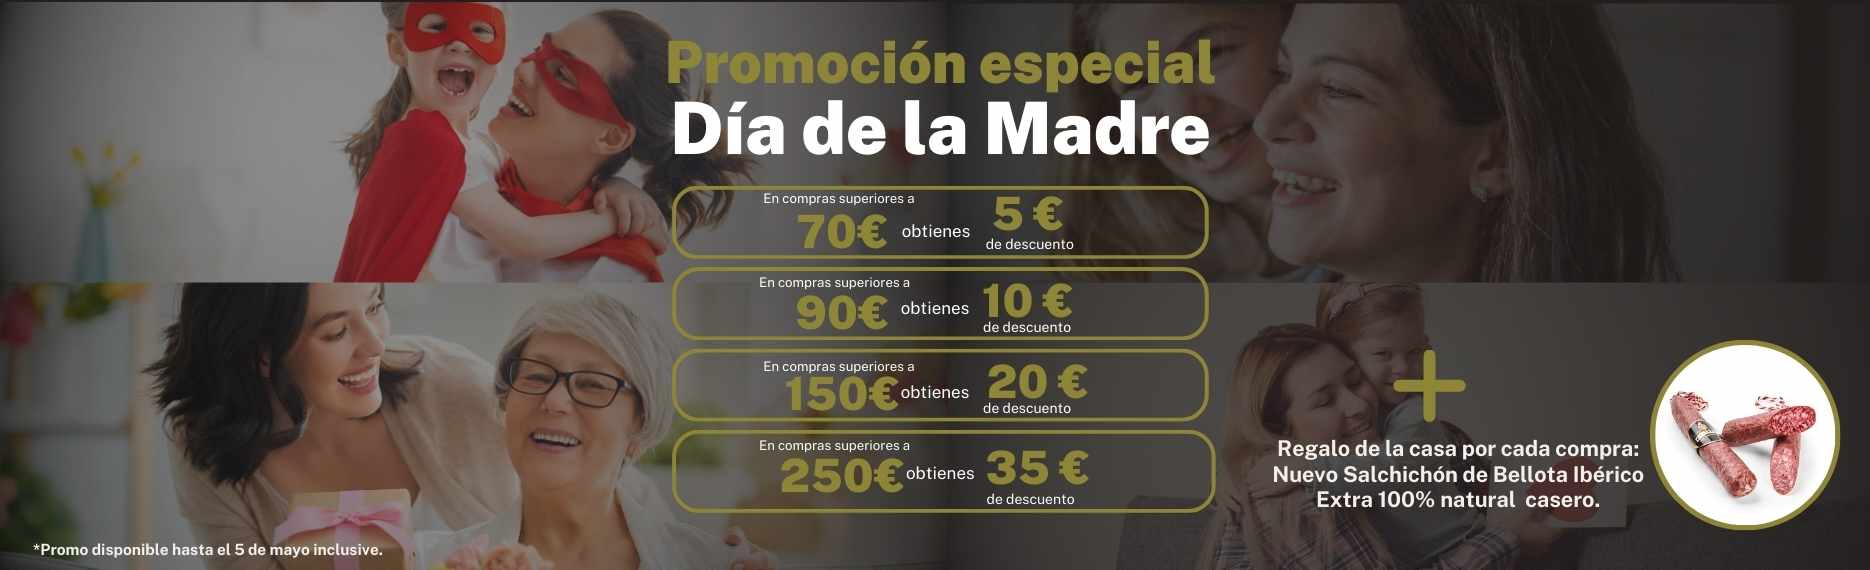 Promocion Jamones - Día de la Madre - Jamones Caballero_desktop